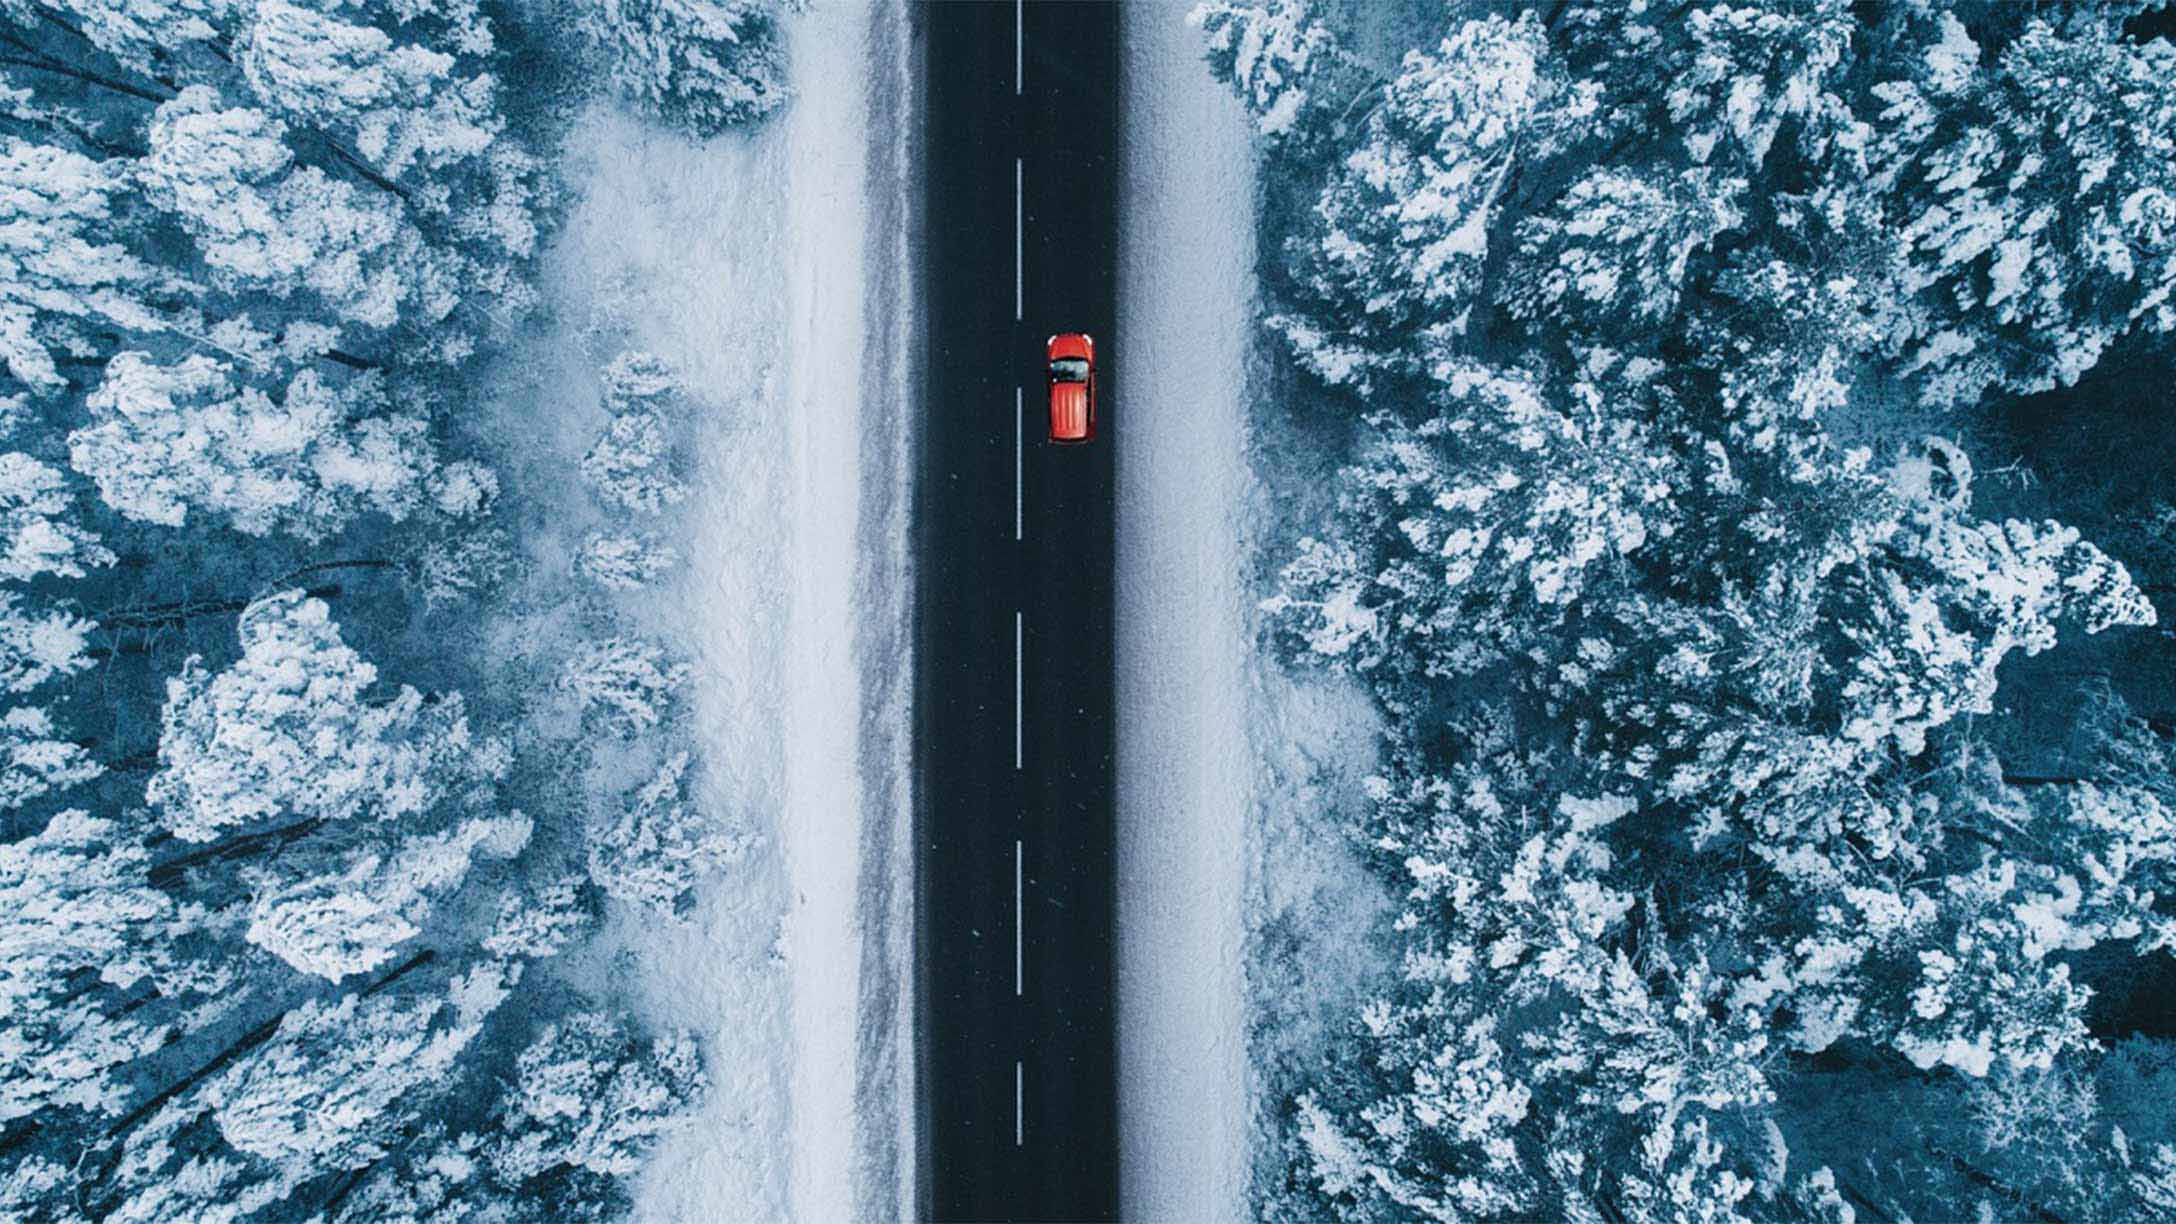 Car on a snowy road